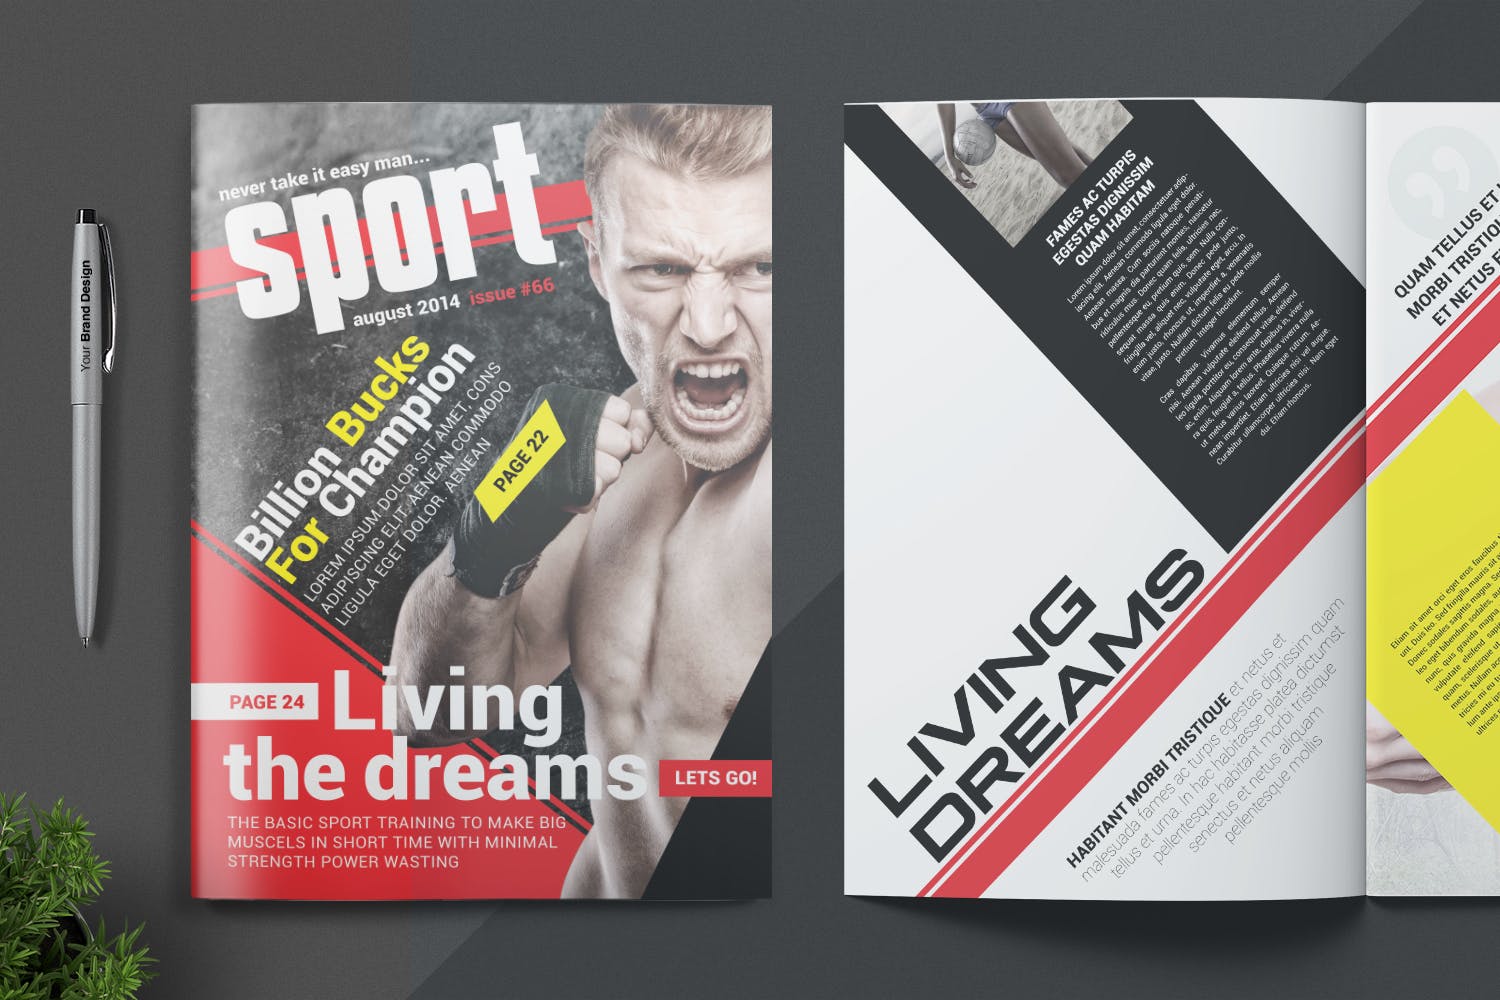 体育运动主题蚂蚁素材精选杂志版式设计InDesign模板 Magazine Template插图